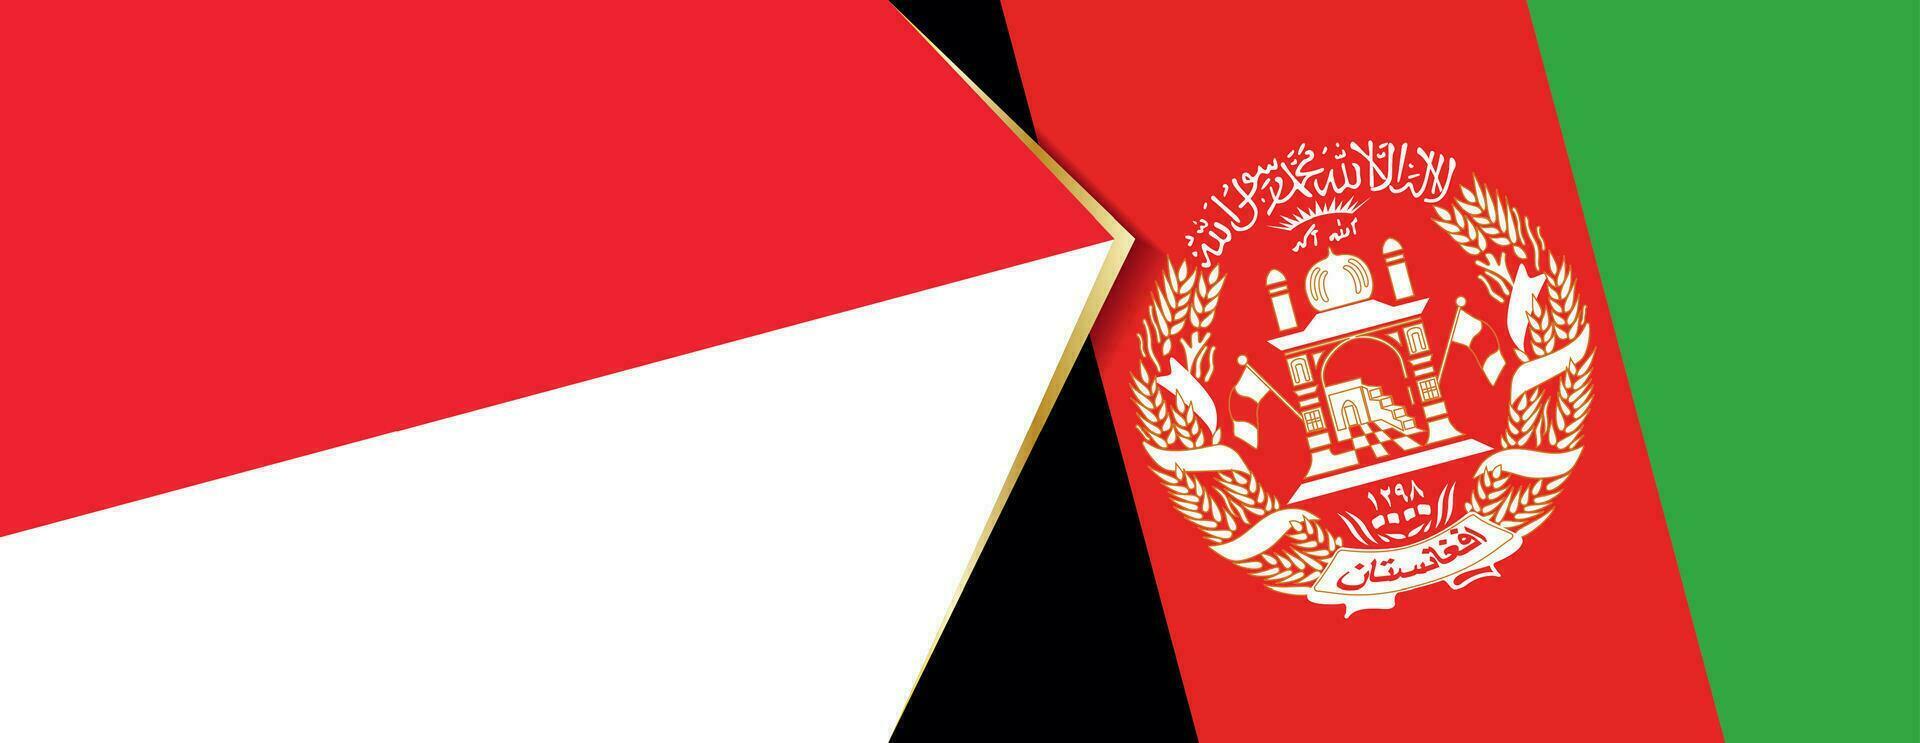 Indonesia y Afganistán banderas, dos vector banderas